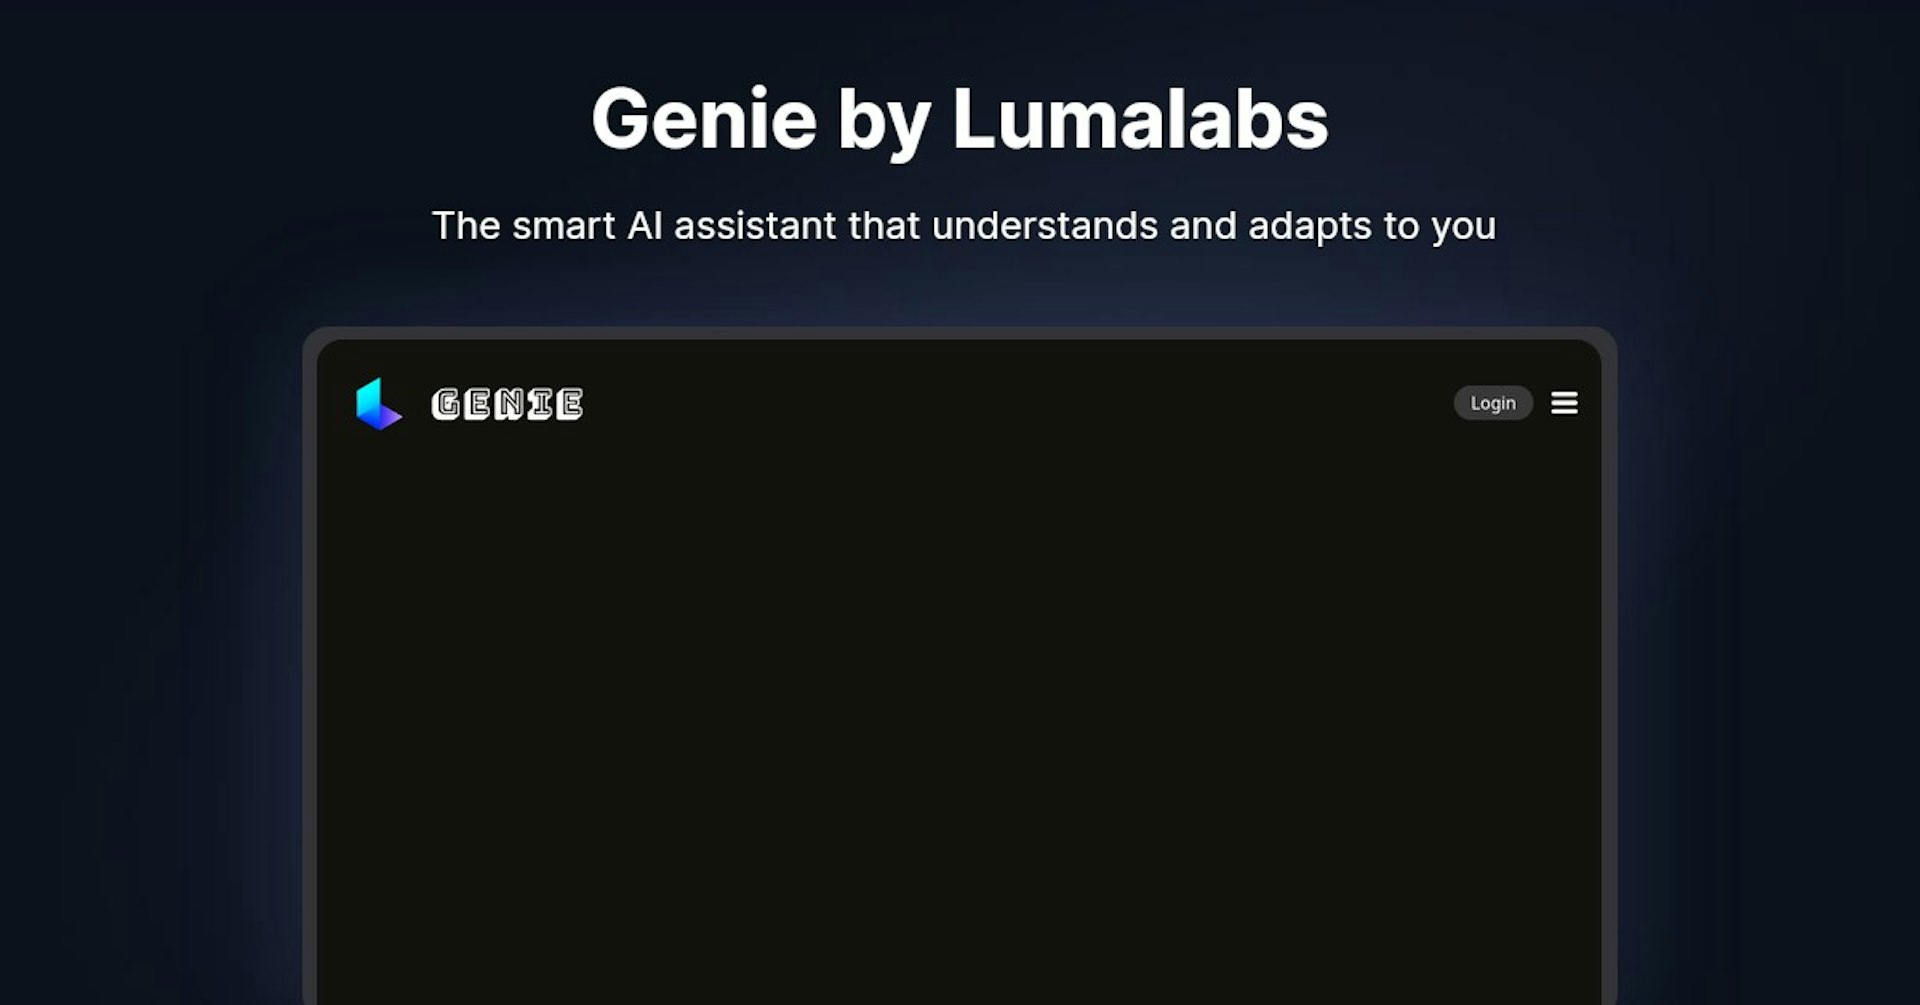 Genie by Lumalabs